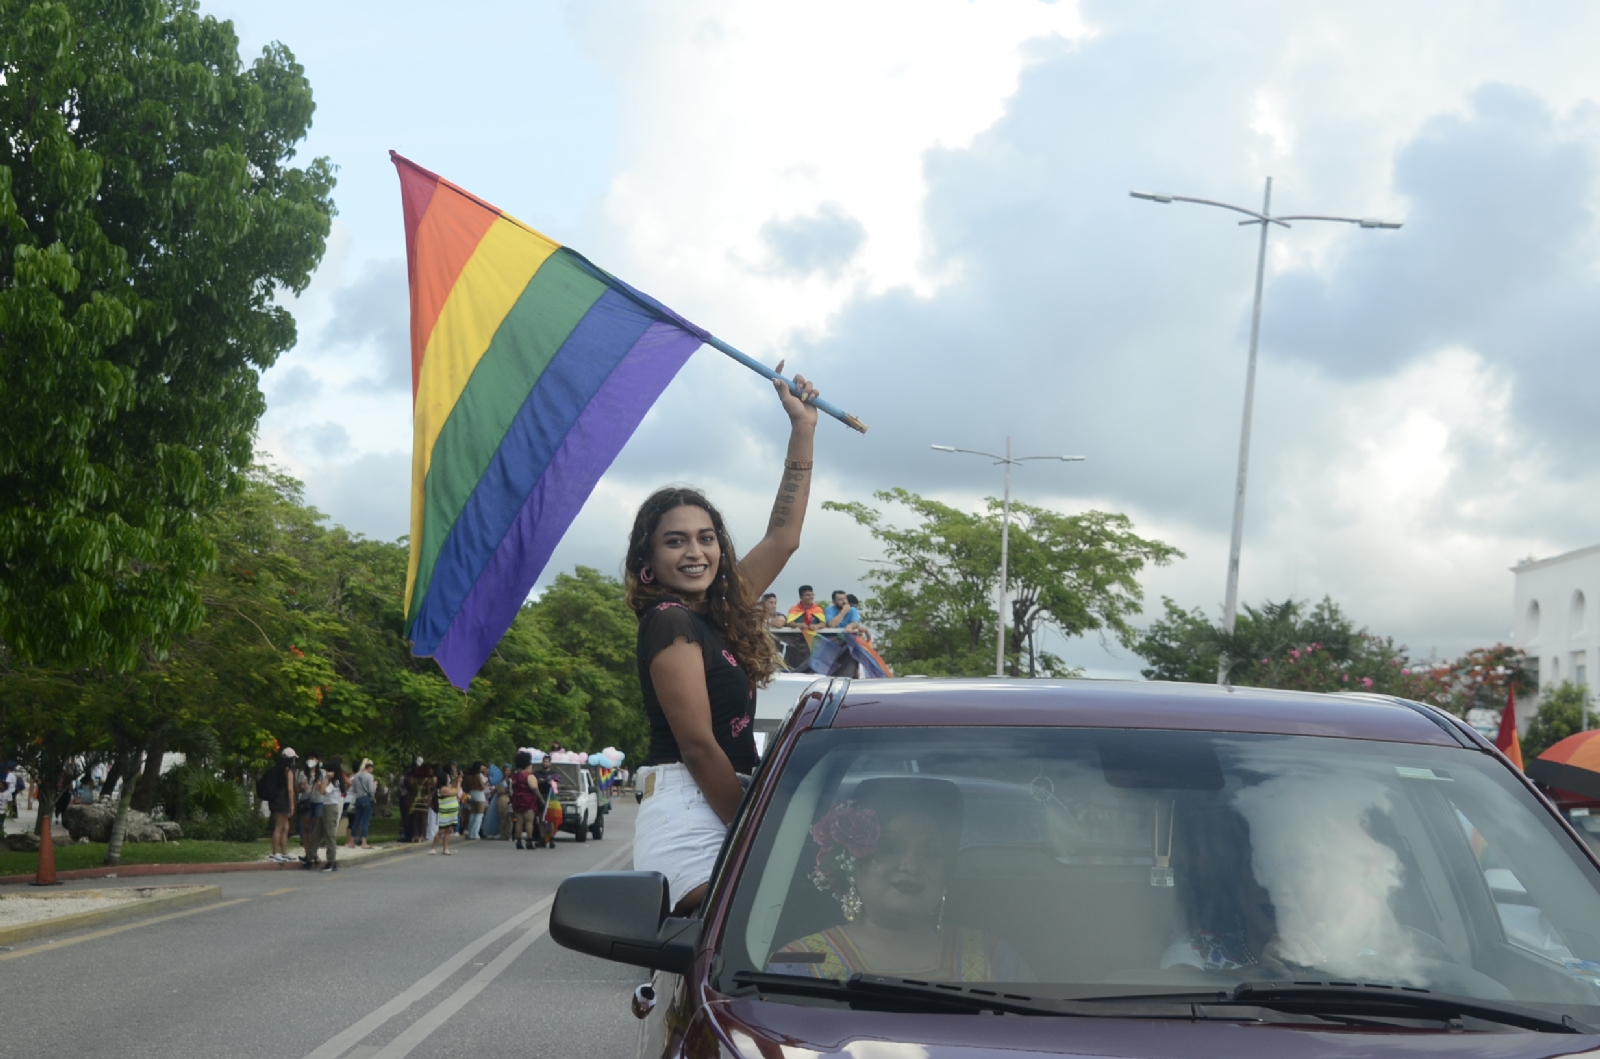 Cancún, entre los cinco destinos gay en México con mayor demanda; aumenta 25% cada año